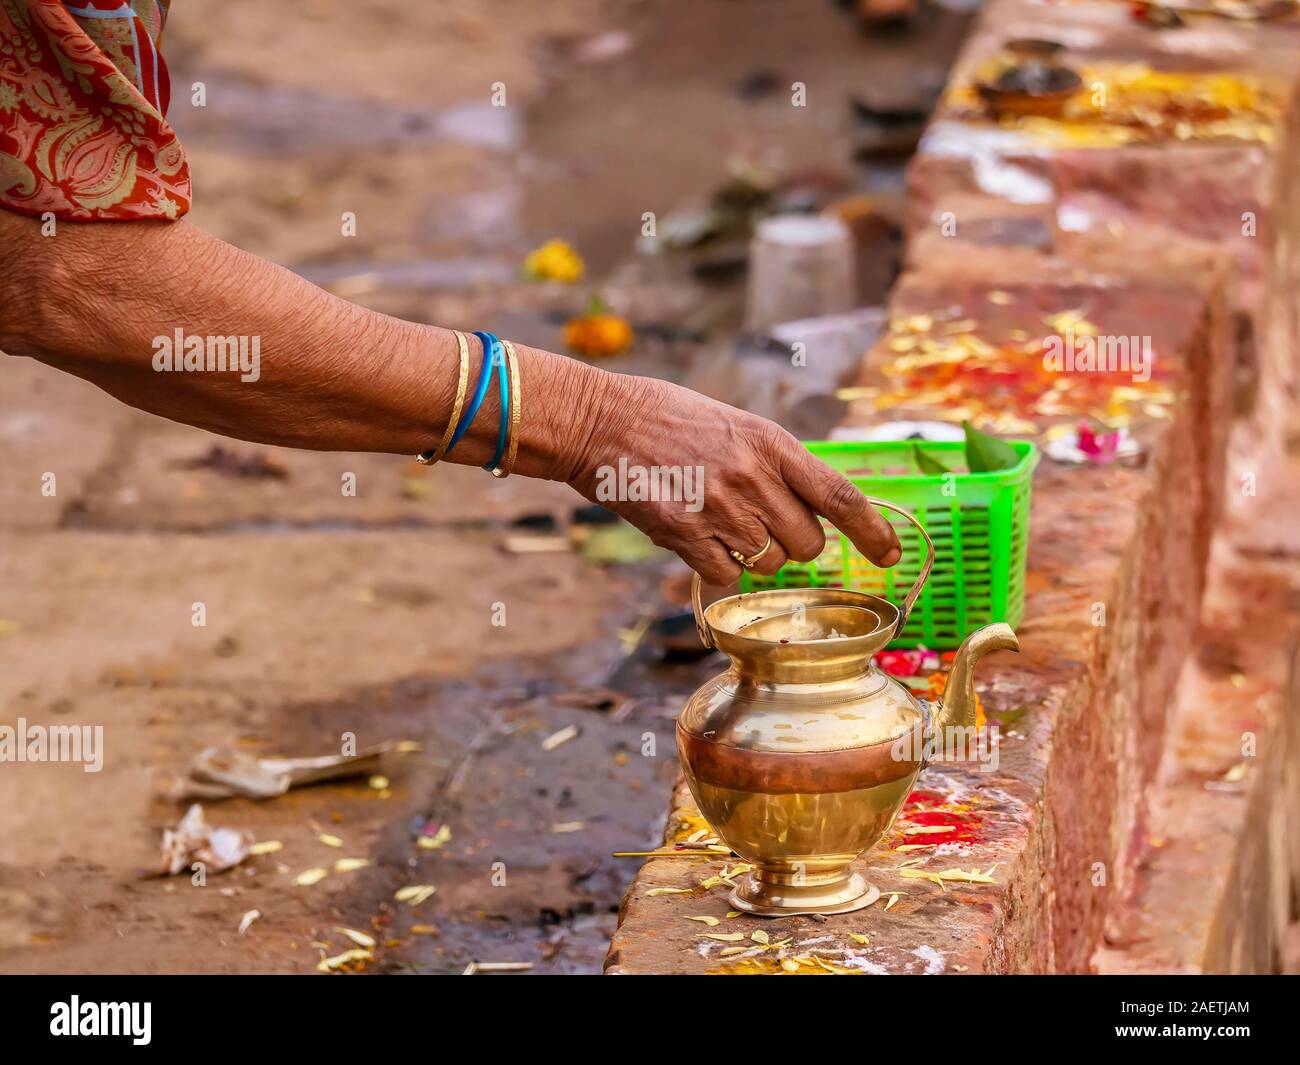 Une femme prépare une offre personnelle à un dieu Hindou à l'aide d'un pot en laiton, un panier de fruits et de feuilles de bétel, et coloré de poudre kumkum. Banque D'Images